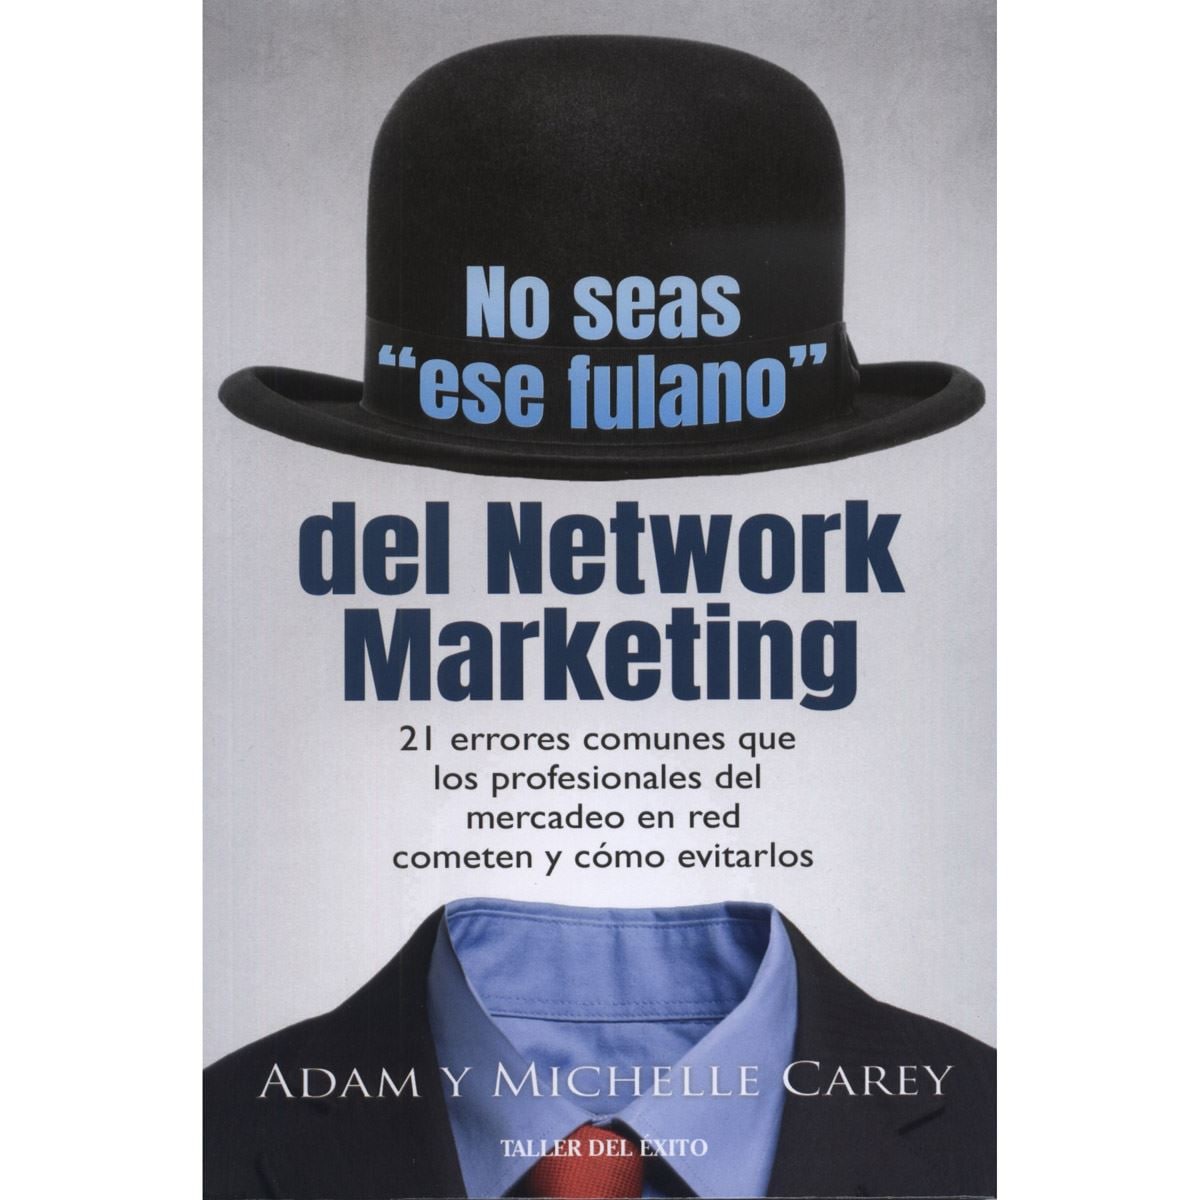 No seas "ese fulano" del Network Marketing. 21 errores comunes que los profesionales del mercadeo en red cometen y cómo evitarlos